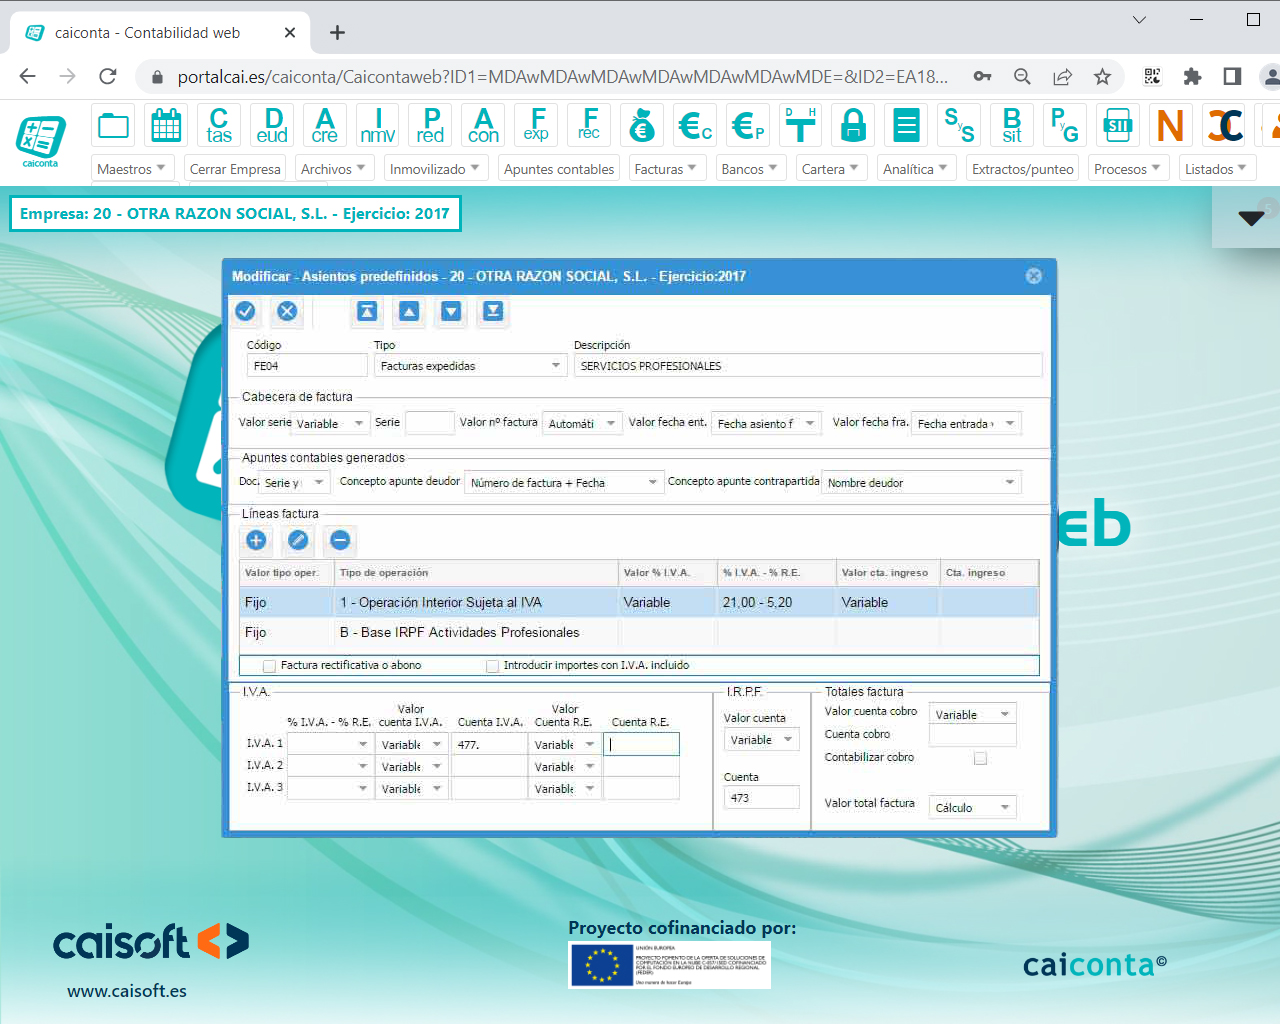 Asientos predefinidos para la introducción de apuntes contables: software contabilidad online CAICONTA